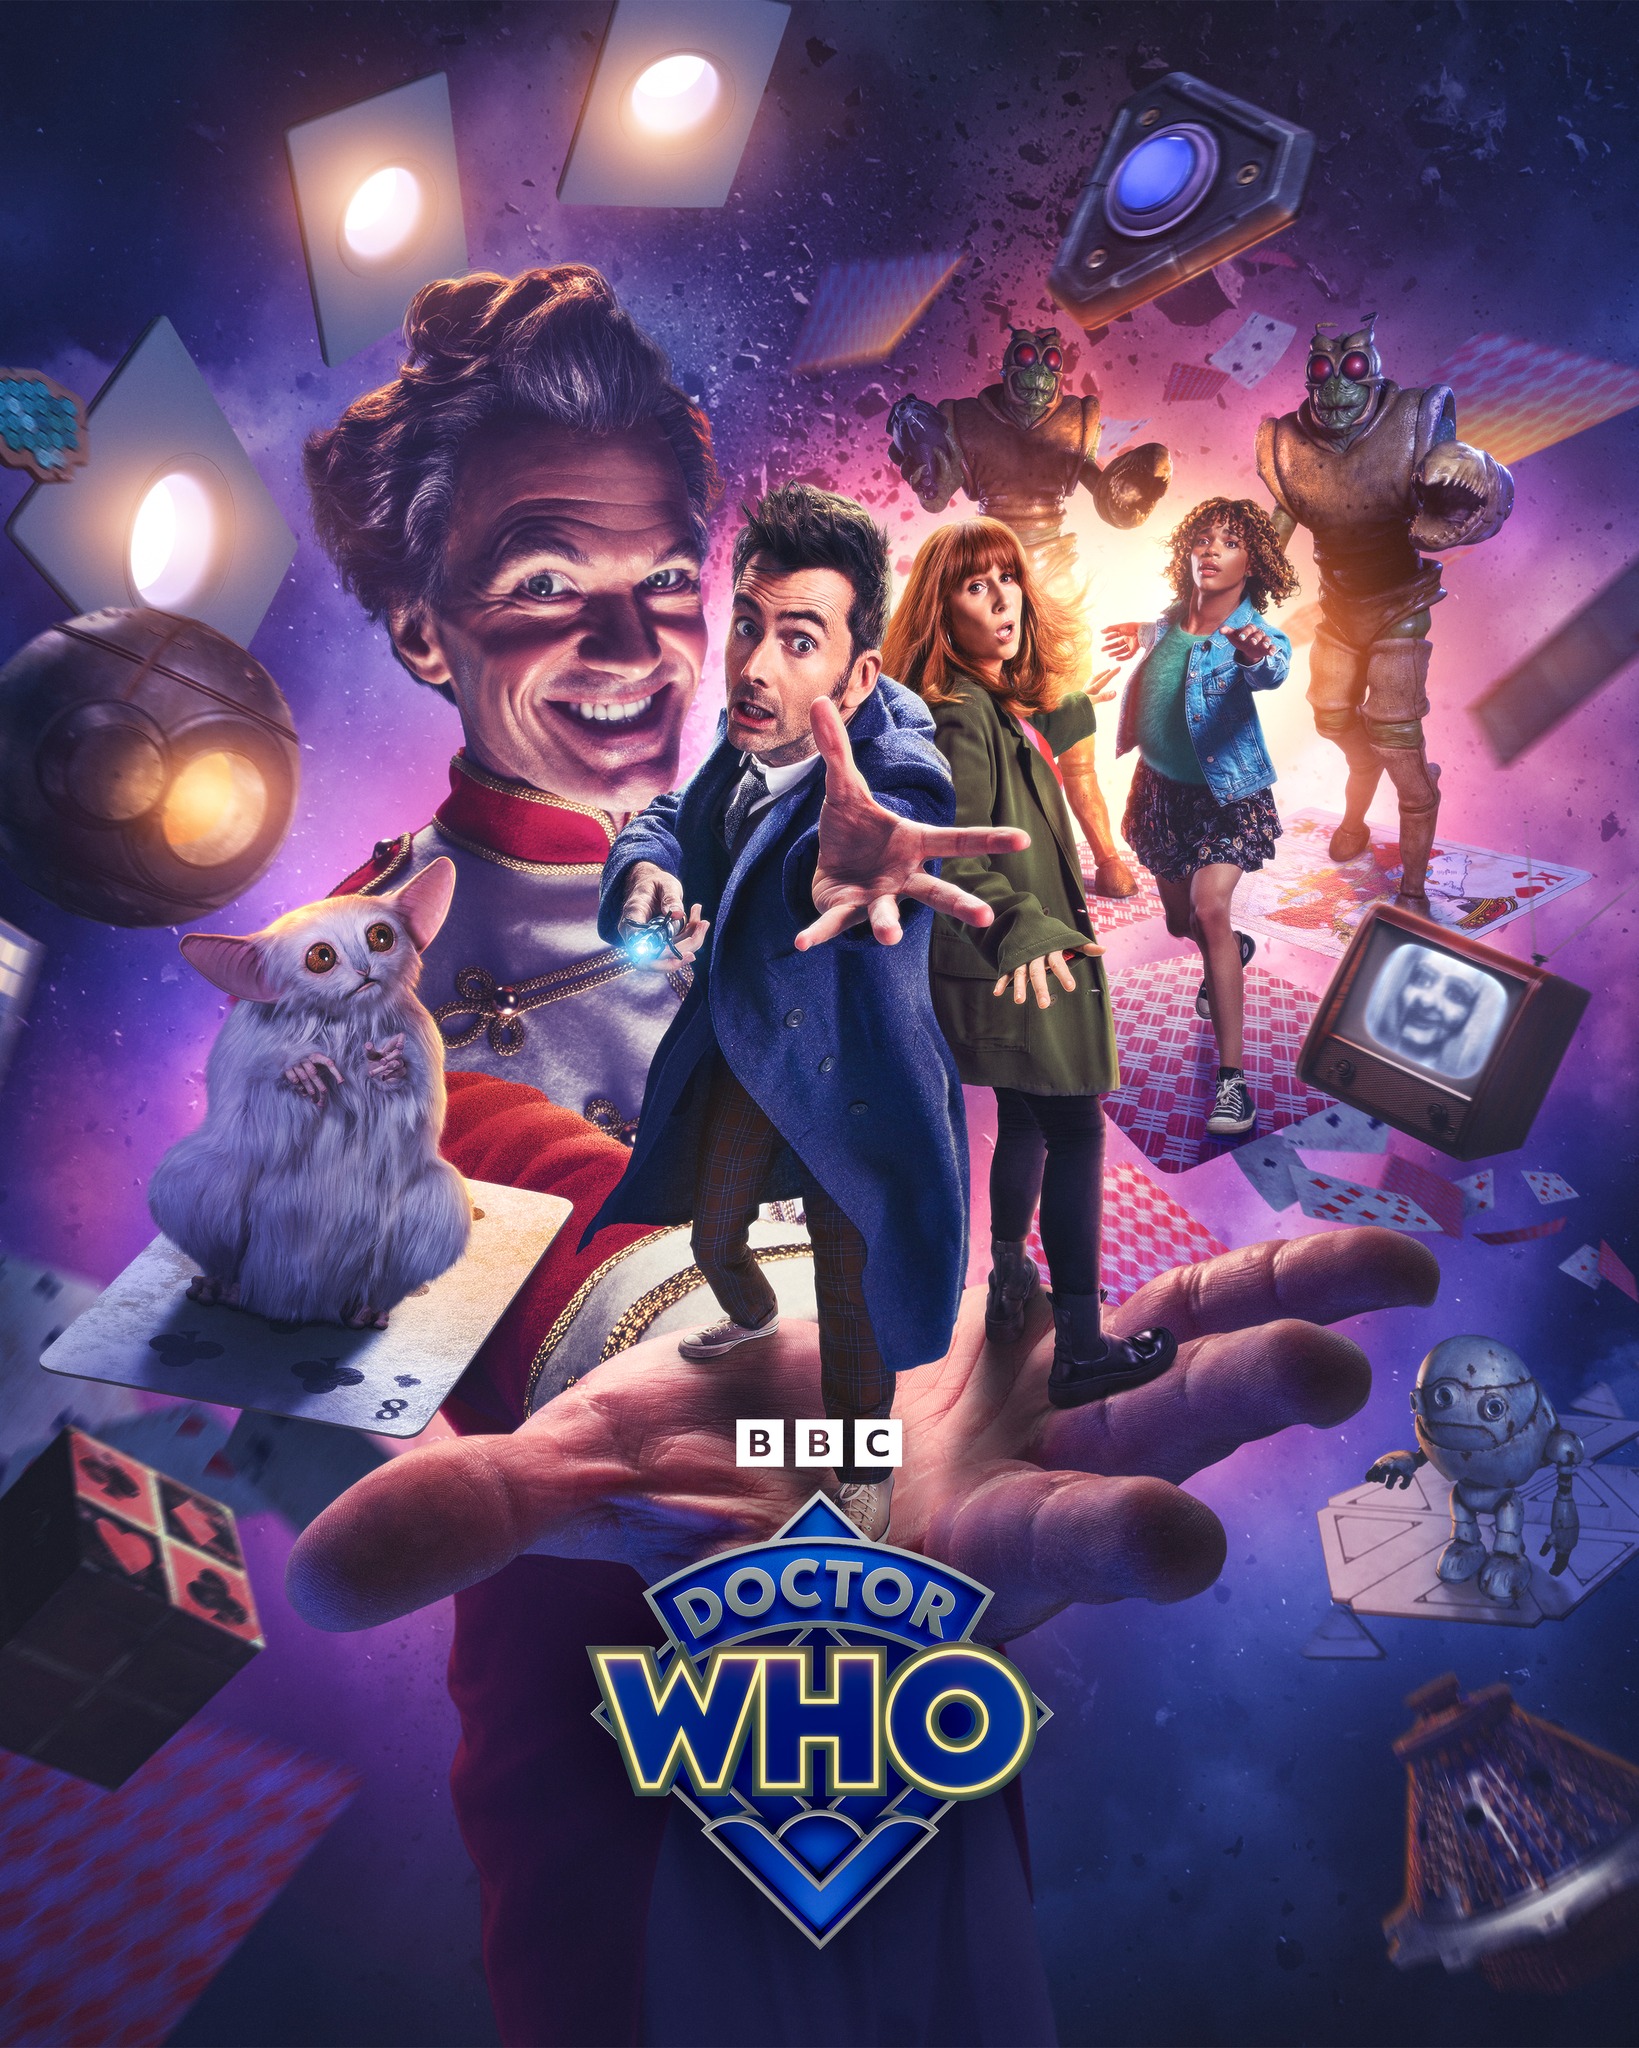 Doctor Who Hypnoweb : Affiche promotionnelle des épisodes spéciaux des 60 ans